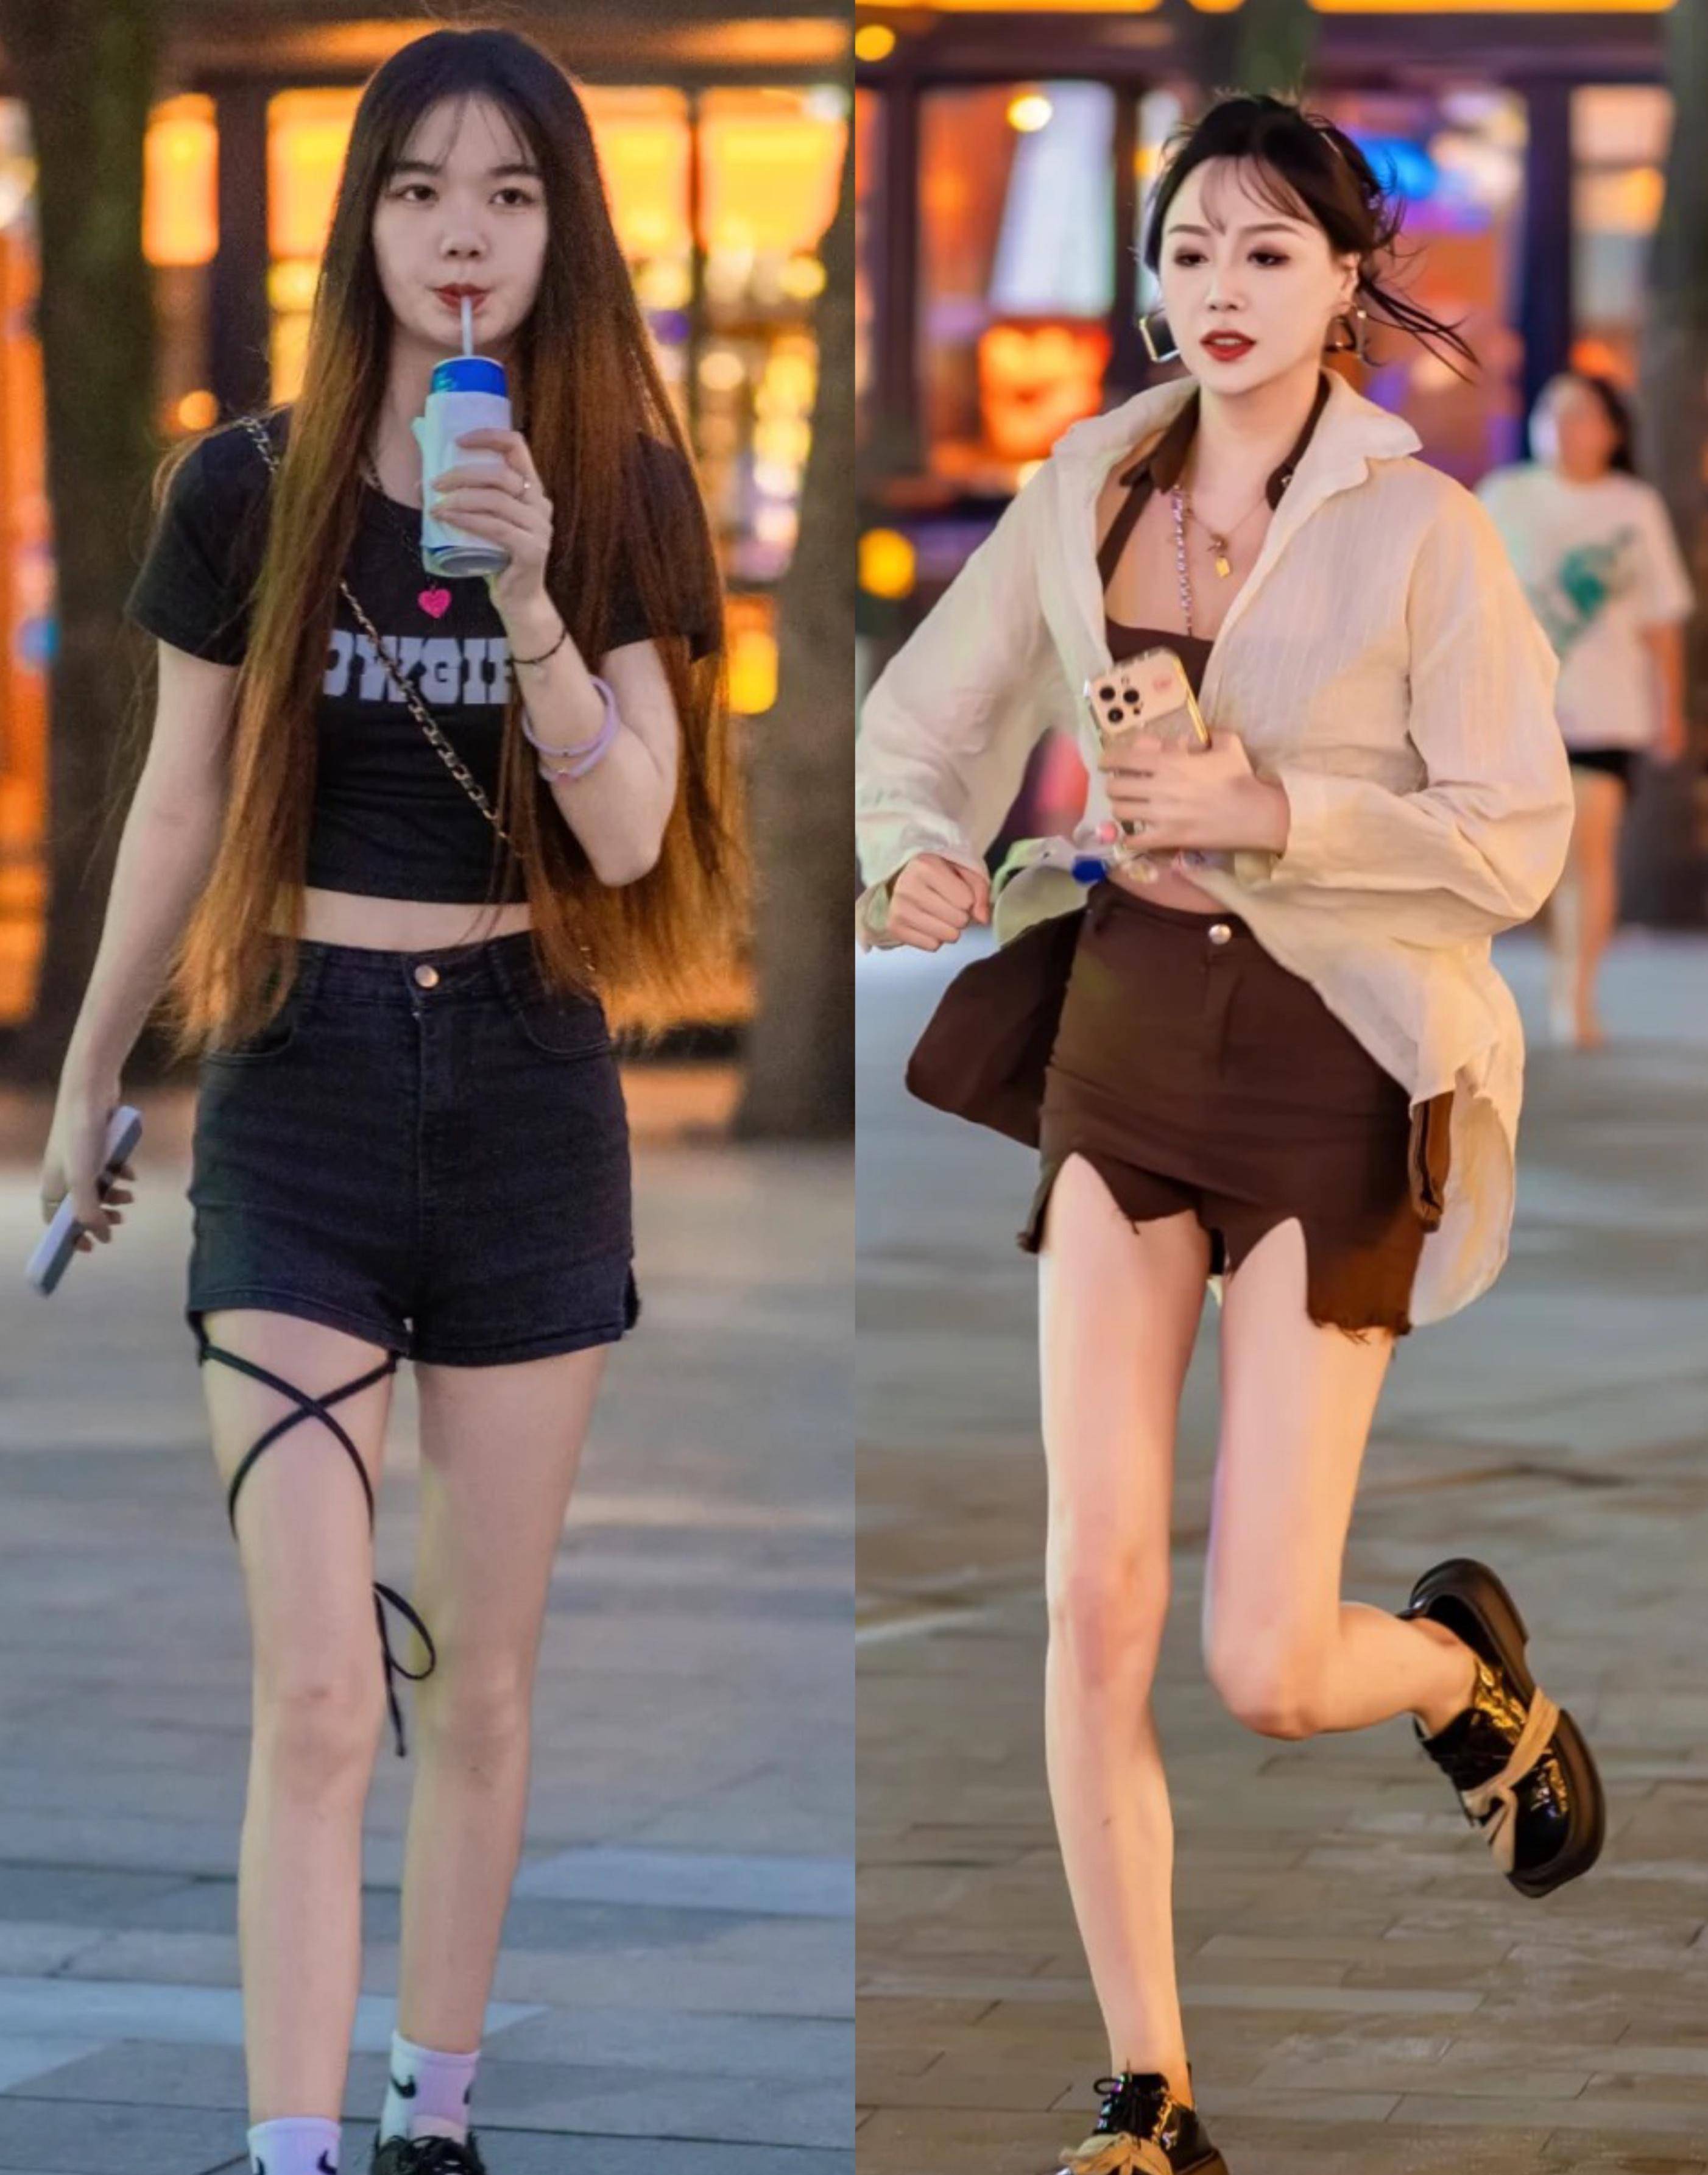 看看武汉的街拍照片就知道时髦女孩不穿高跟鞋,小白鞋和小皮鞋很时髦